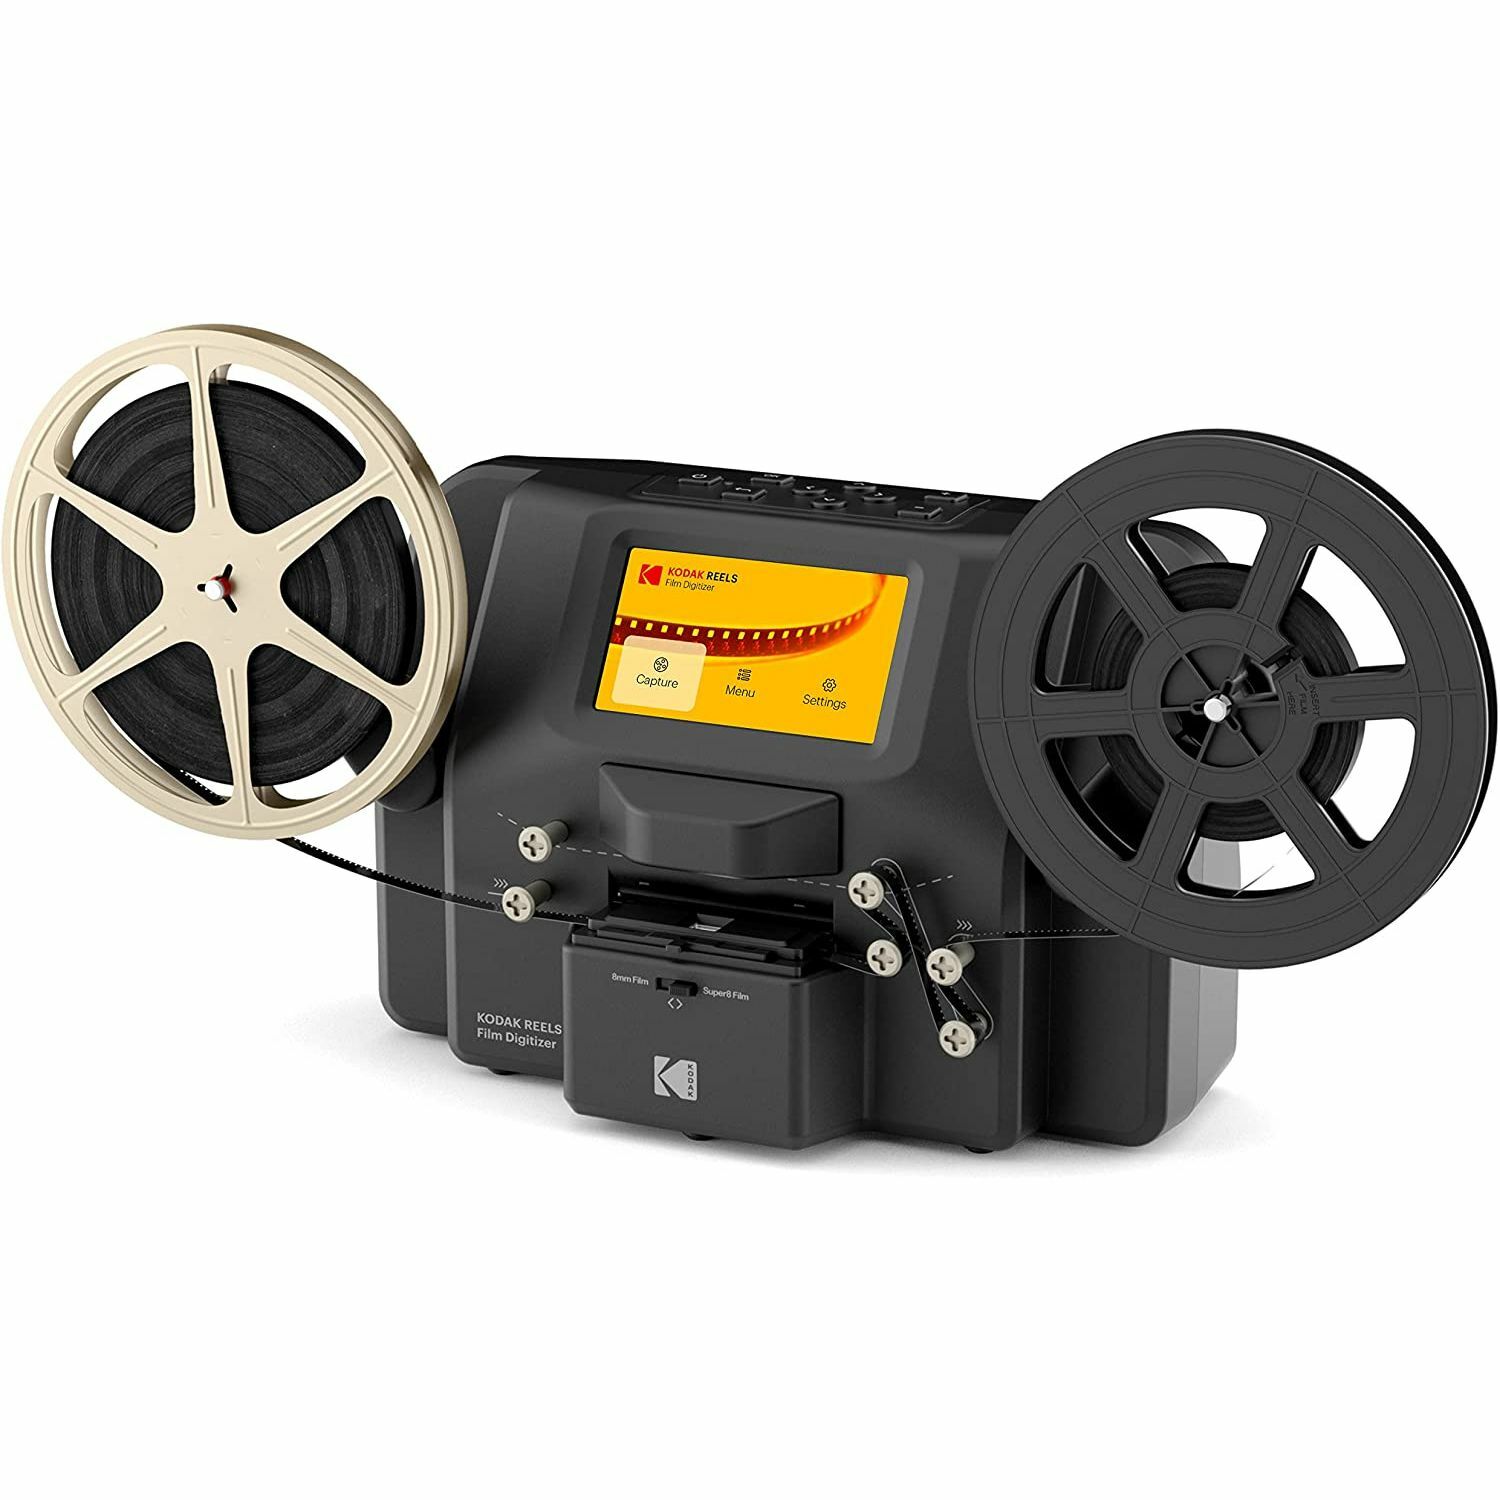  8mm Film Take-Up Reel 7 Metal Reel : Electronics